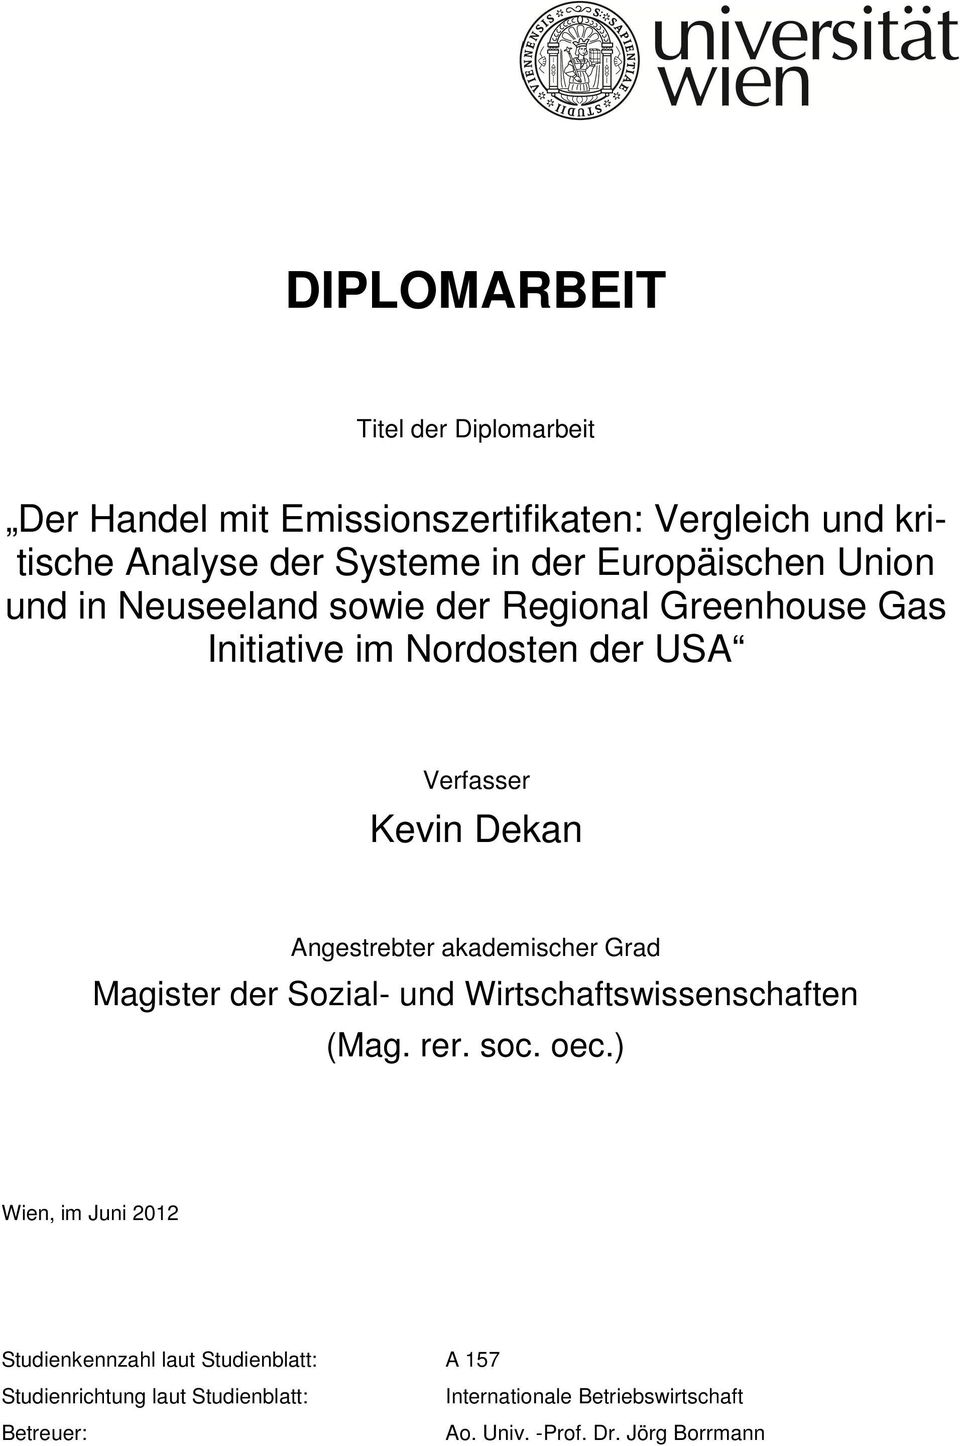 Angestrebter akademischer Grad Magister der Sozial- und Wirtschaftswissenschaften (Mag. rer. soc. oec.